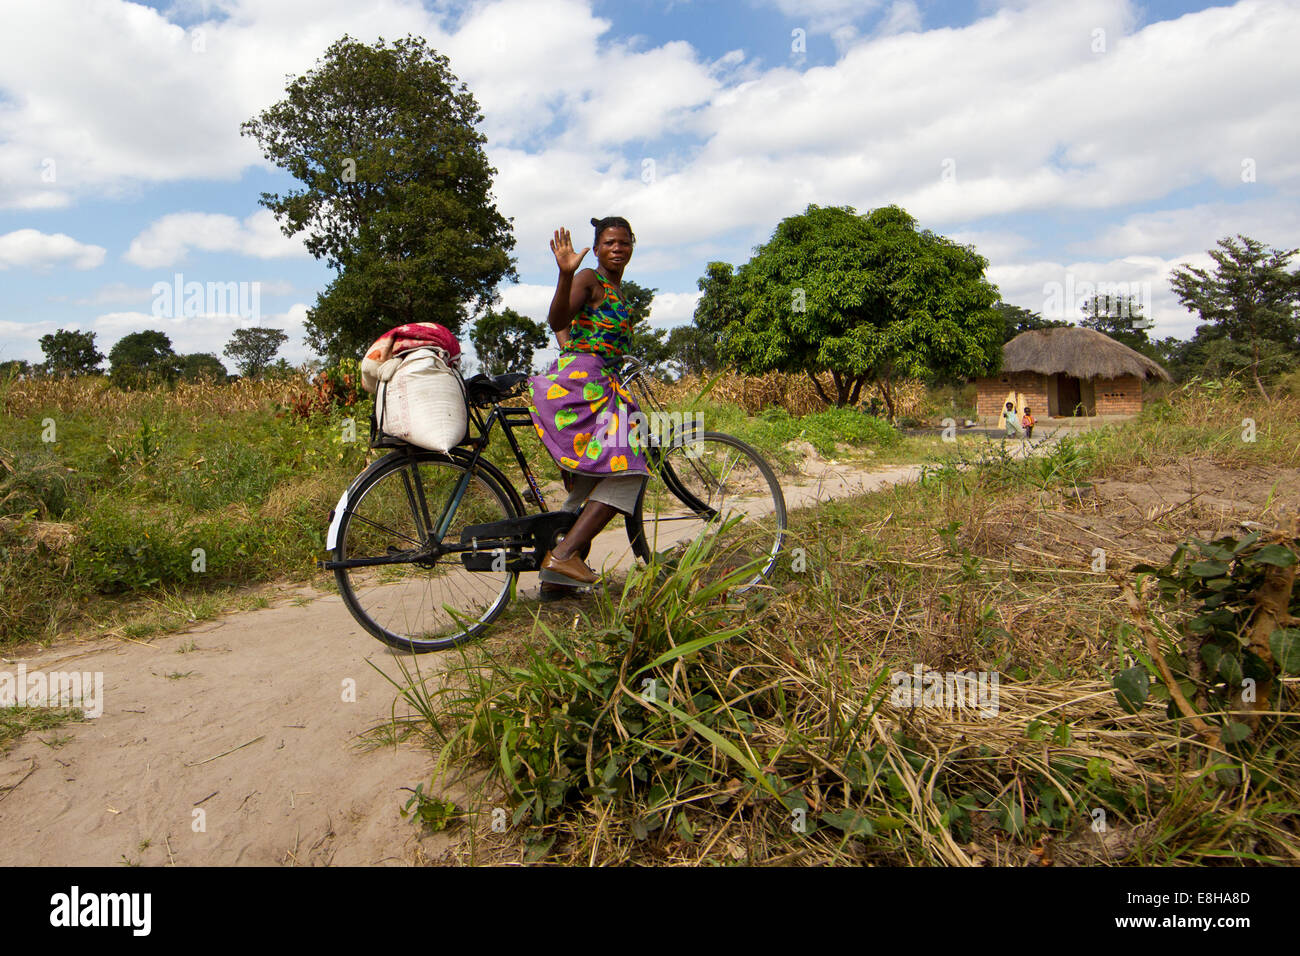 Femme sur un vélo dans un milieu rural village zambien bonjour vagues. Banque D'Images